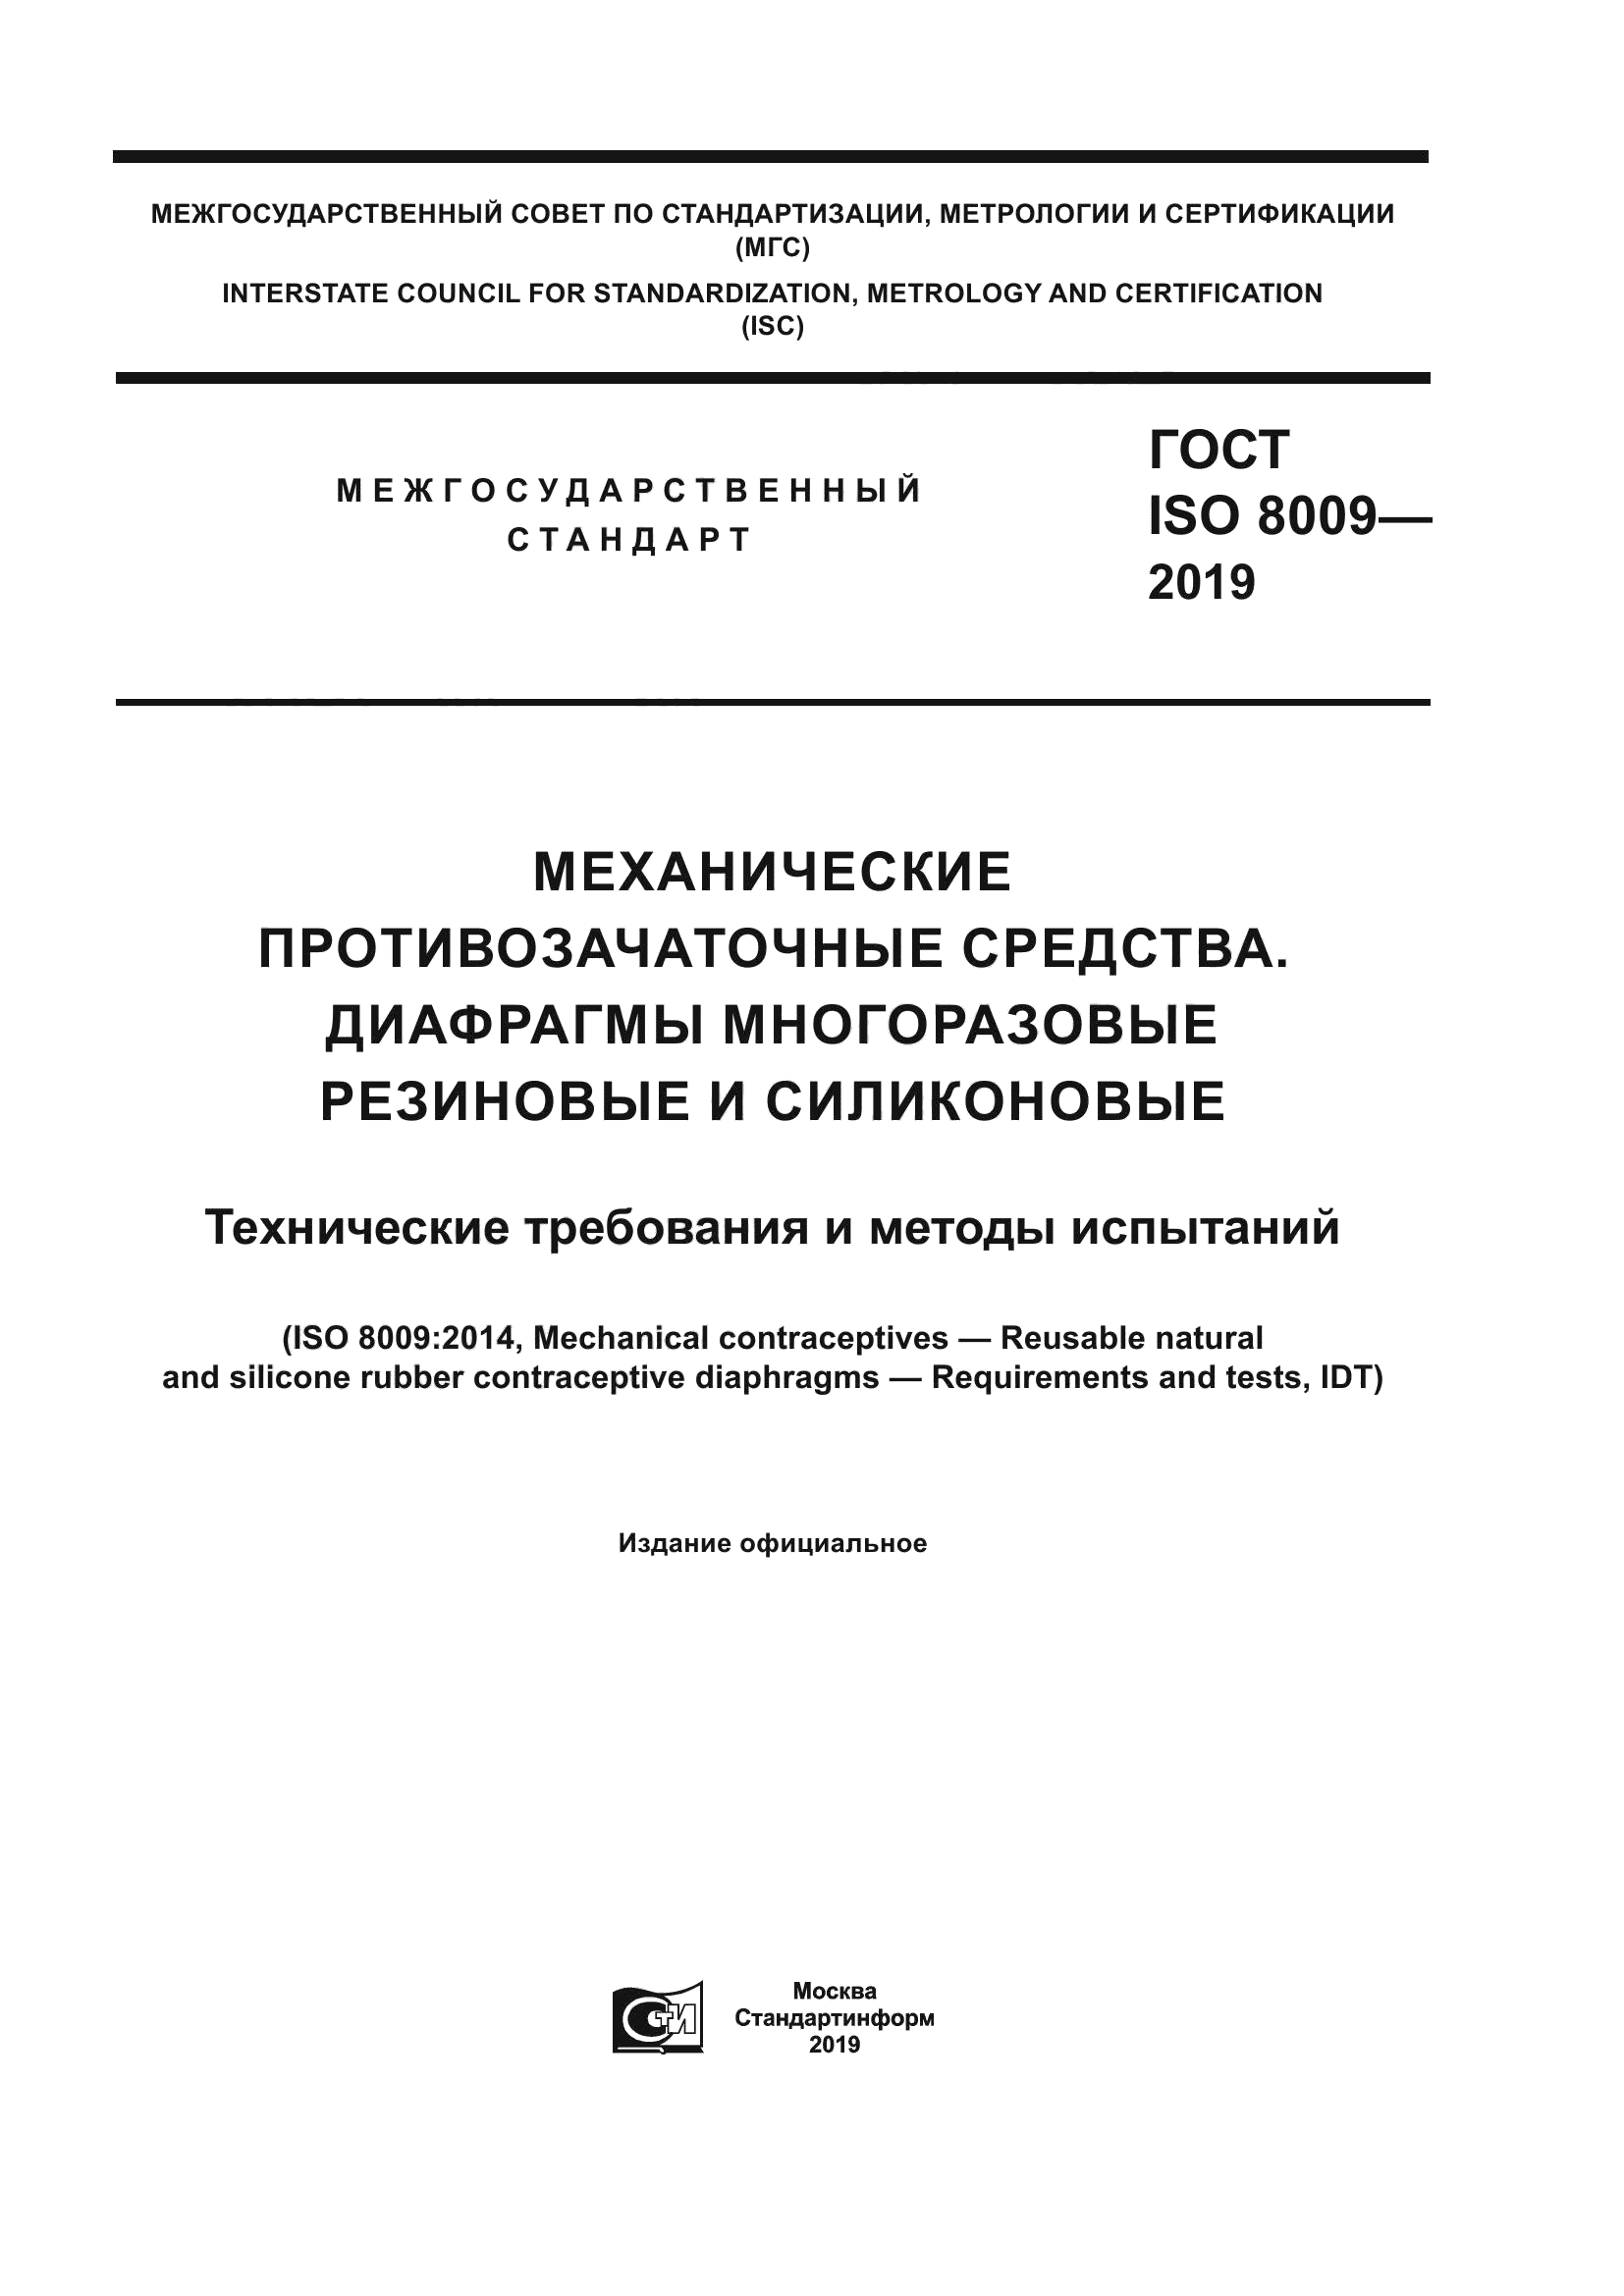 ГОСТ ISO 8009-2019